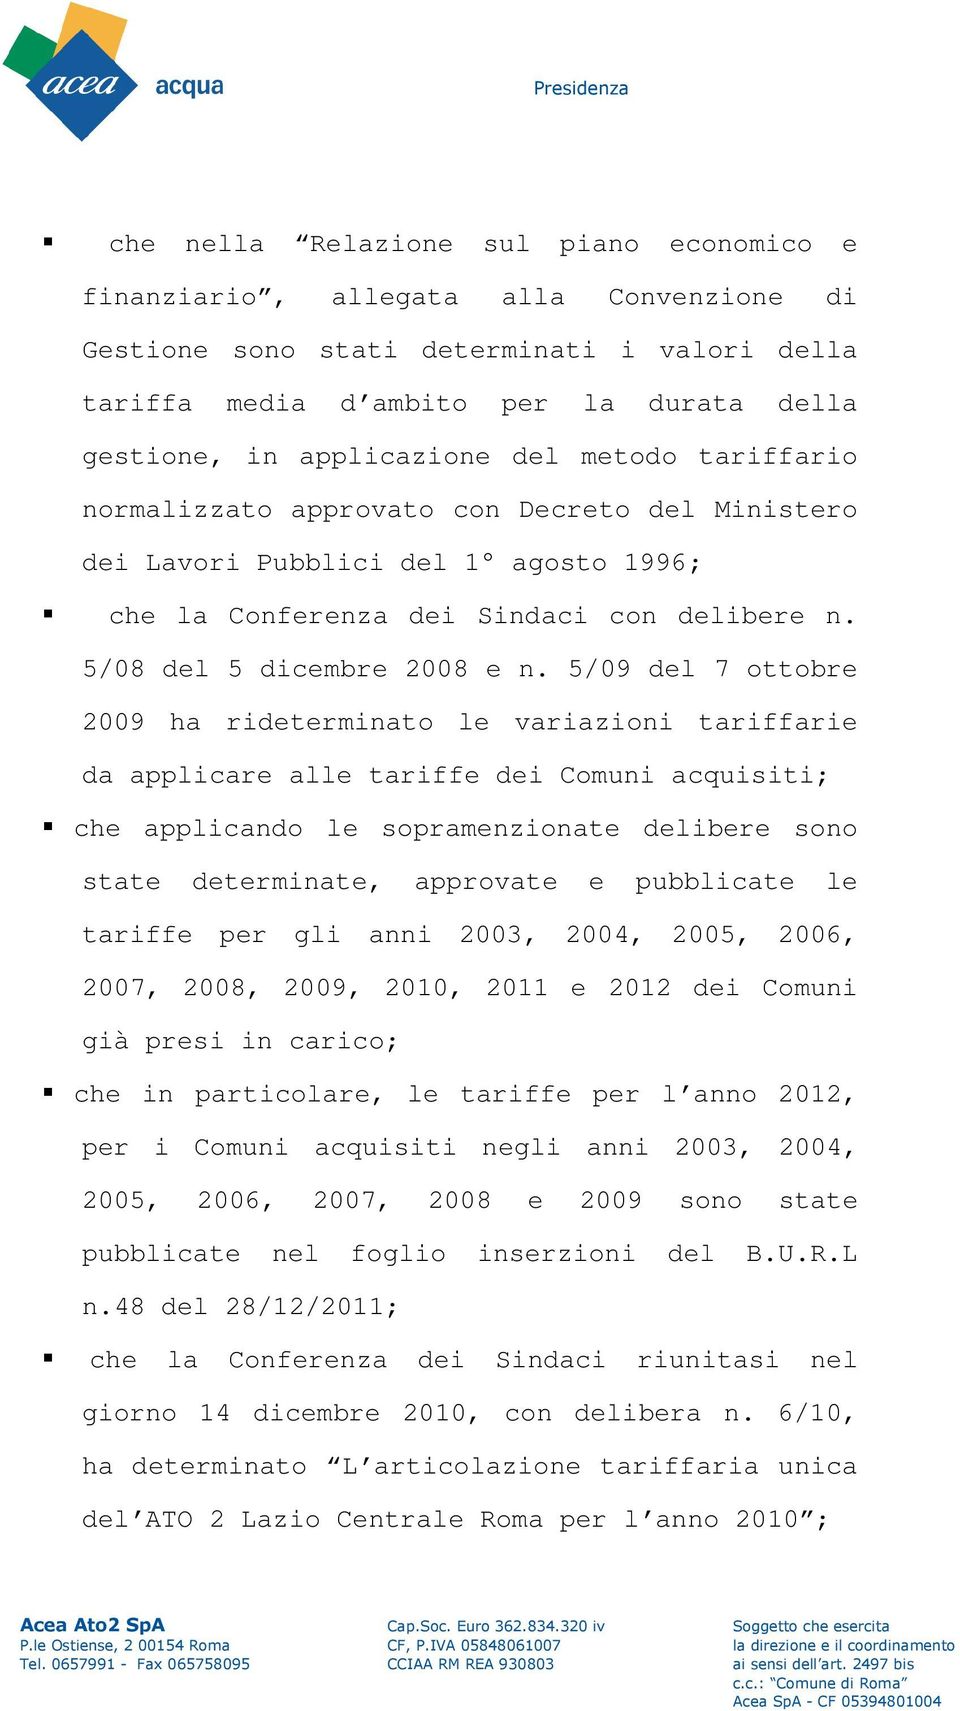 5/09 del 7 ottobre 2009 ha rideterminato le variazioni tariffarie da applicare alle tariffe dei Comuni acquisiti; che applicando le sopramenzionate delibere sono state determinate, approvate e